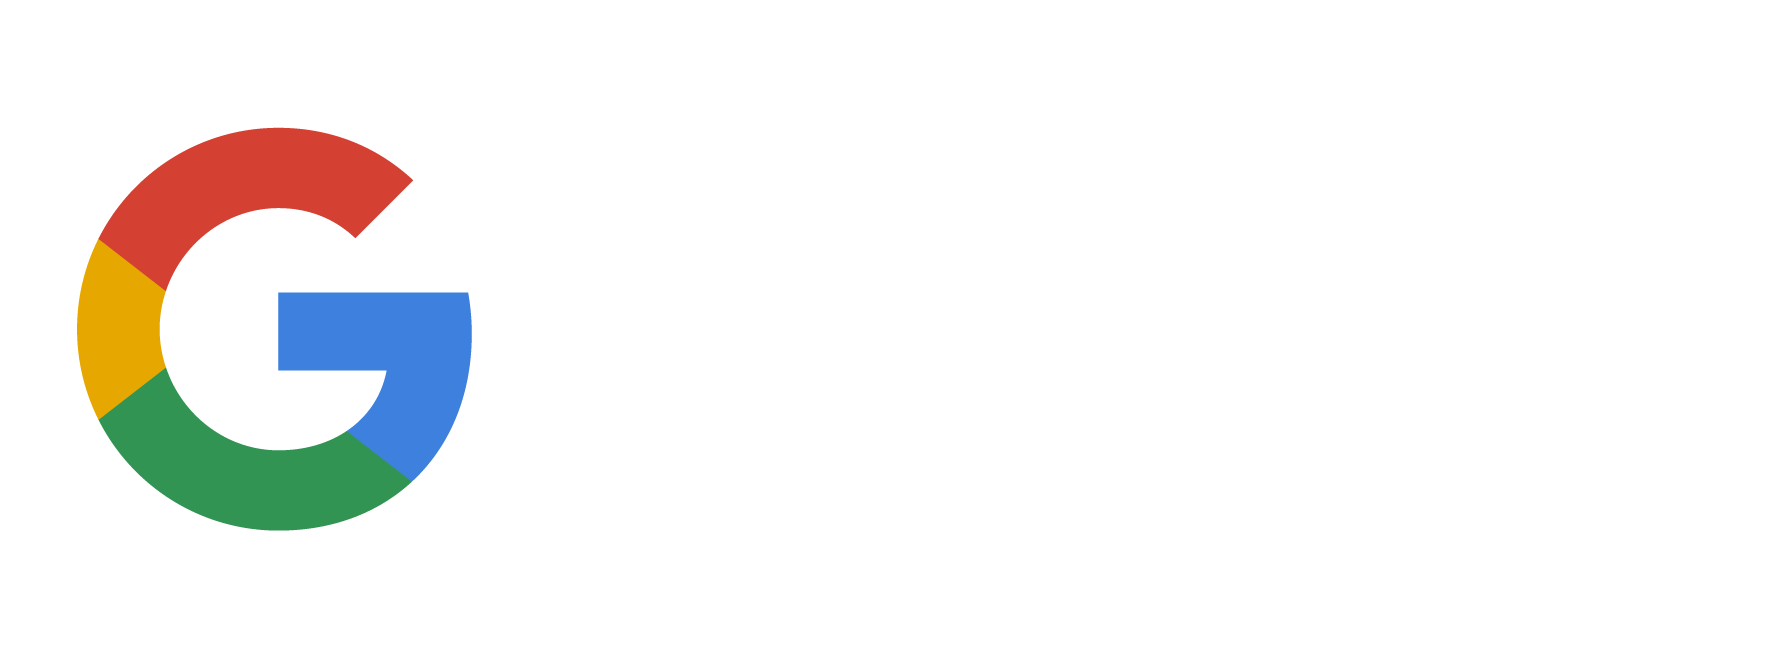 Suite G Logo - G Suite Logo-03 | Baker Security & Networks